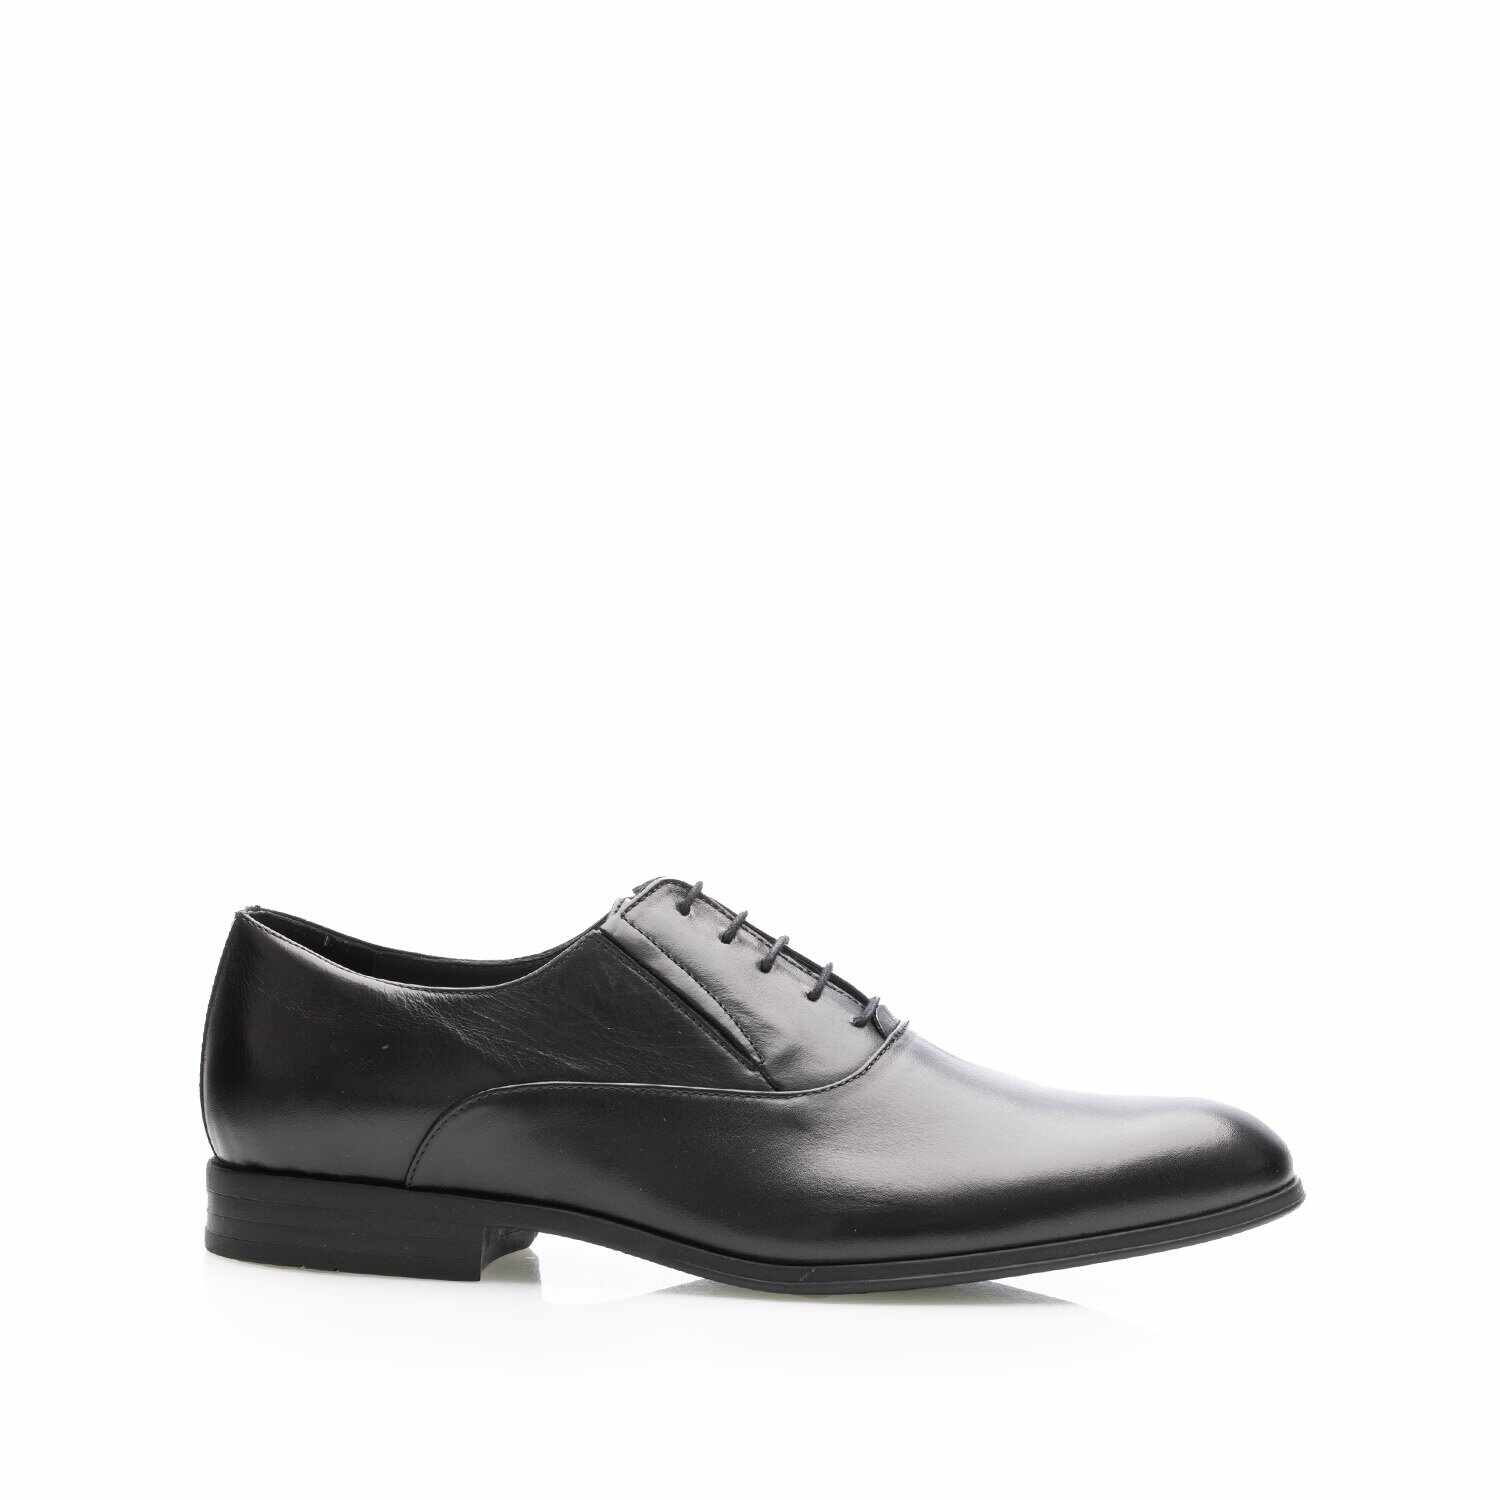 Pantofi eleganți bărbați din piele naturală, Leofex - 669 Negru Box